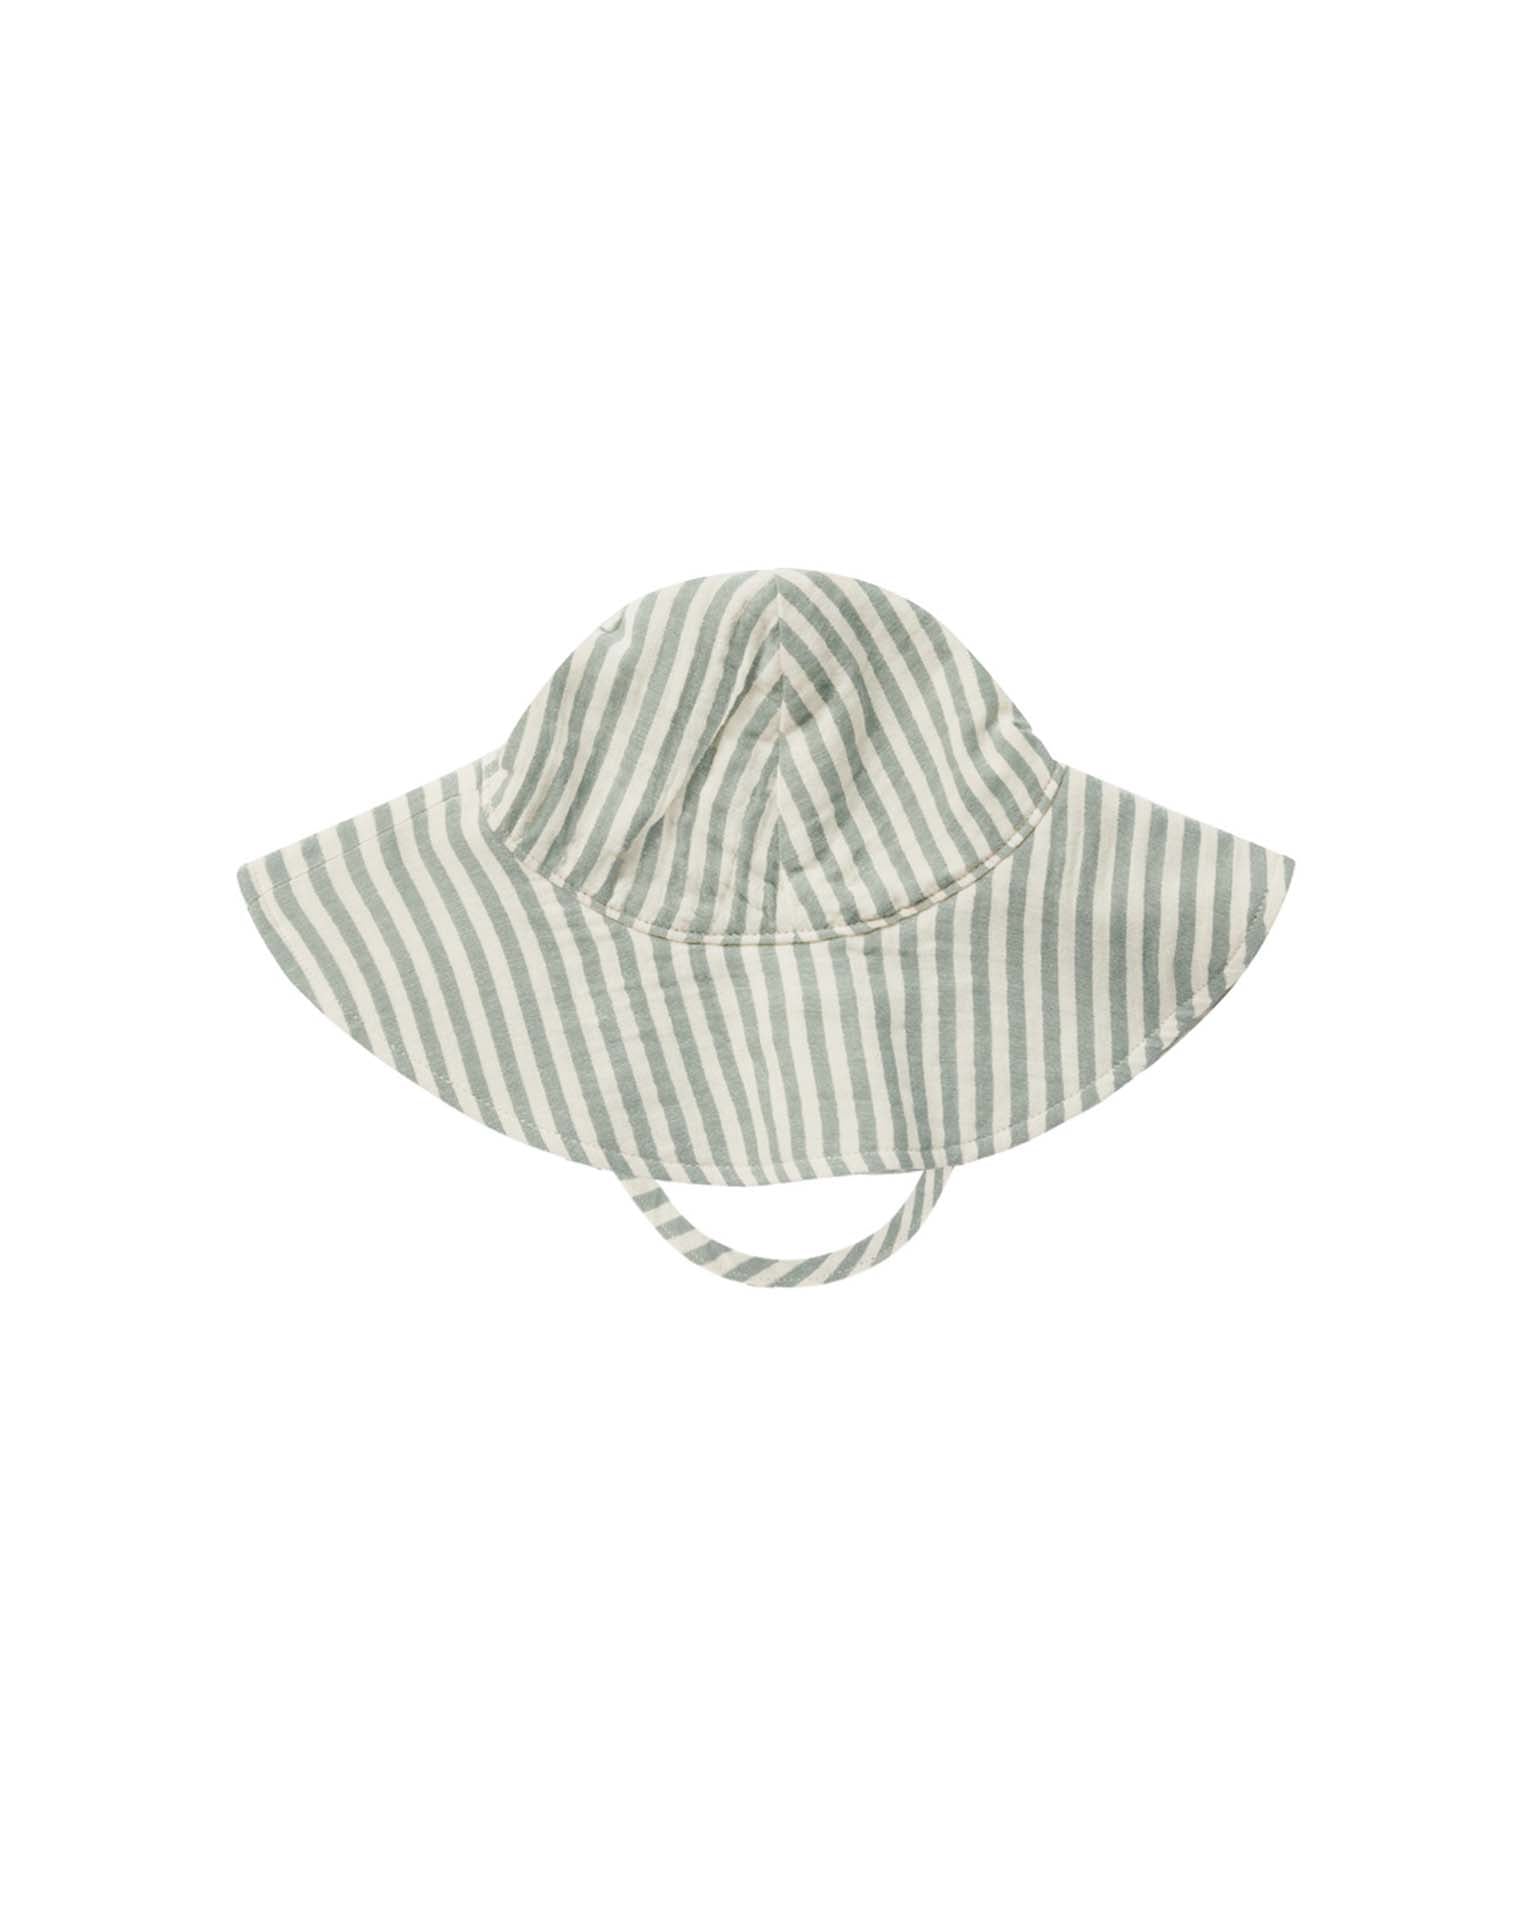 Little rylee + cru accessories floppy sun hat in summer stripe